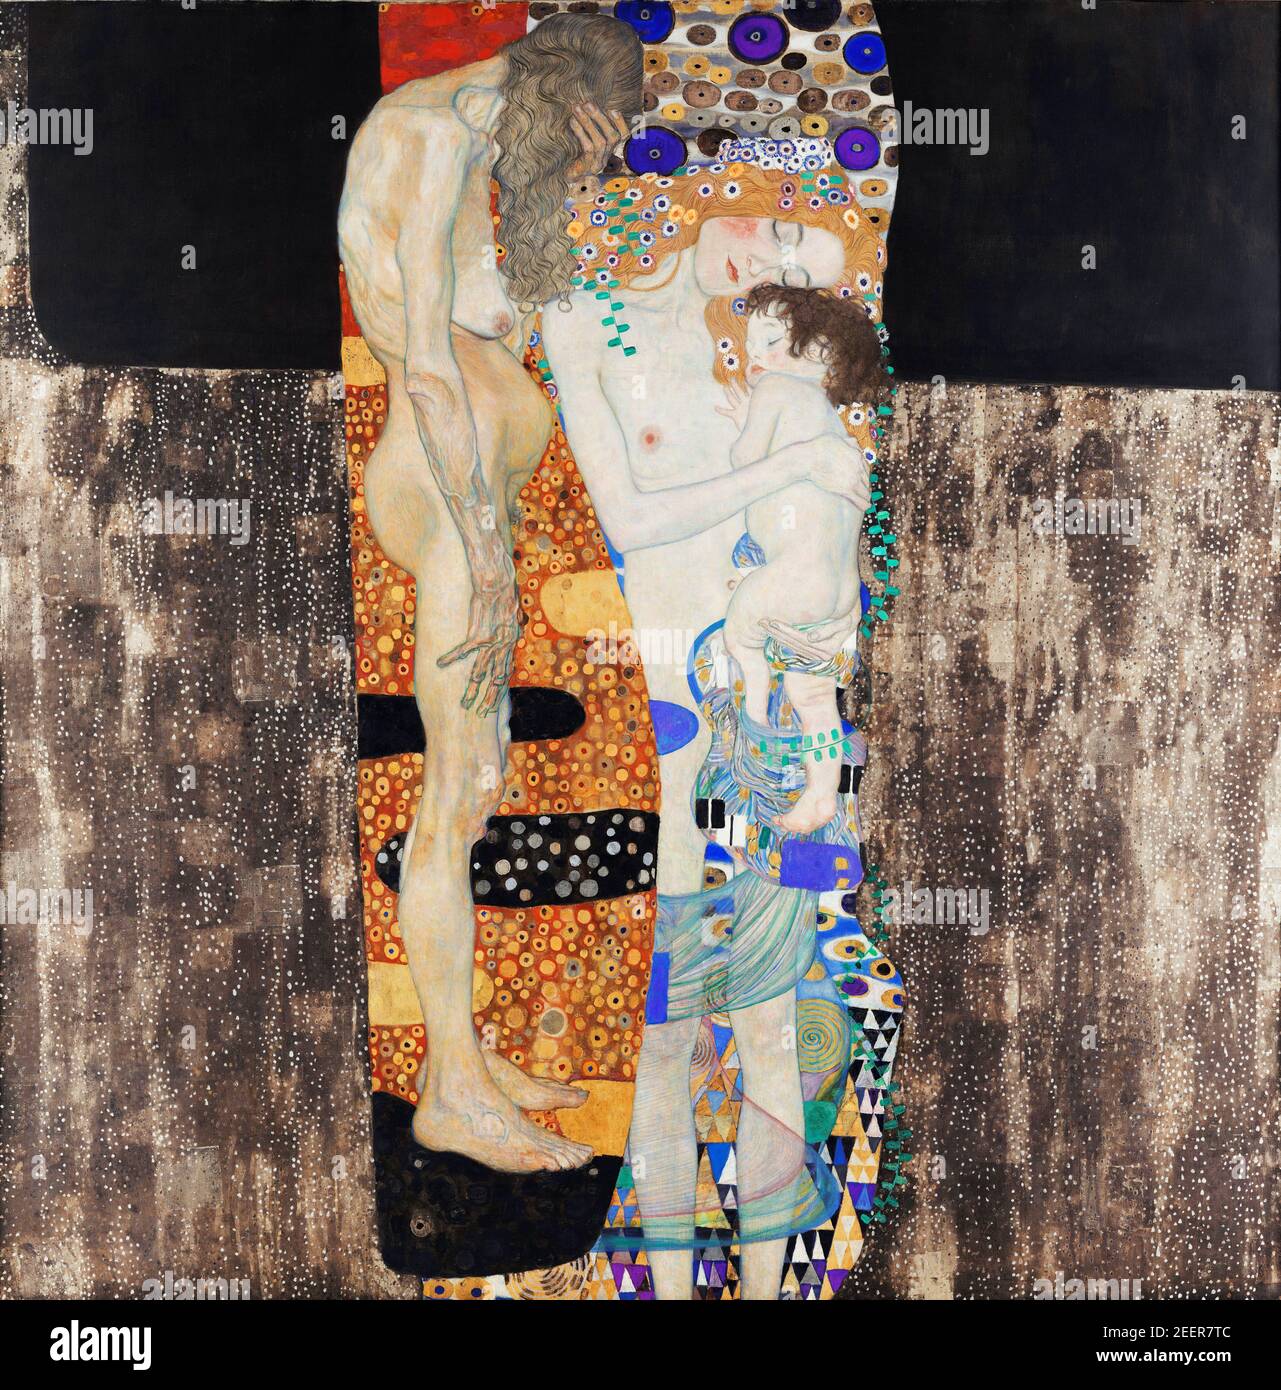 Gustav Klimt. Gemälde "die drei Lebensalter der Frau" von Gustav Klimt (1862-1918), Öl auf Leinwand, 1905 Stockfoto